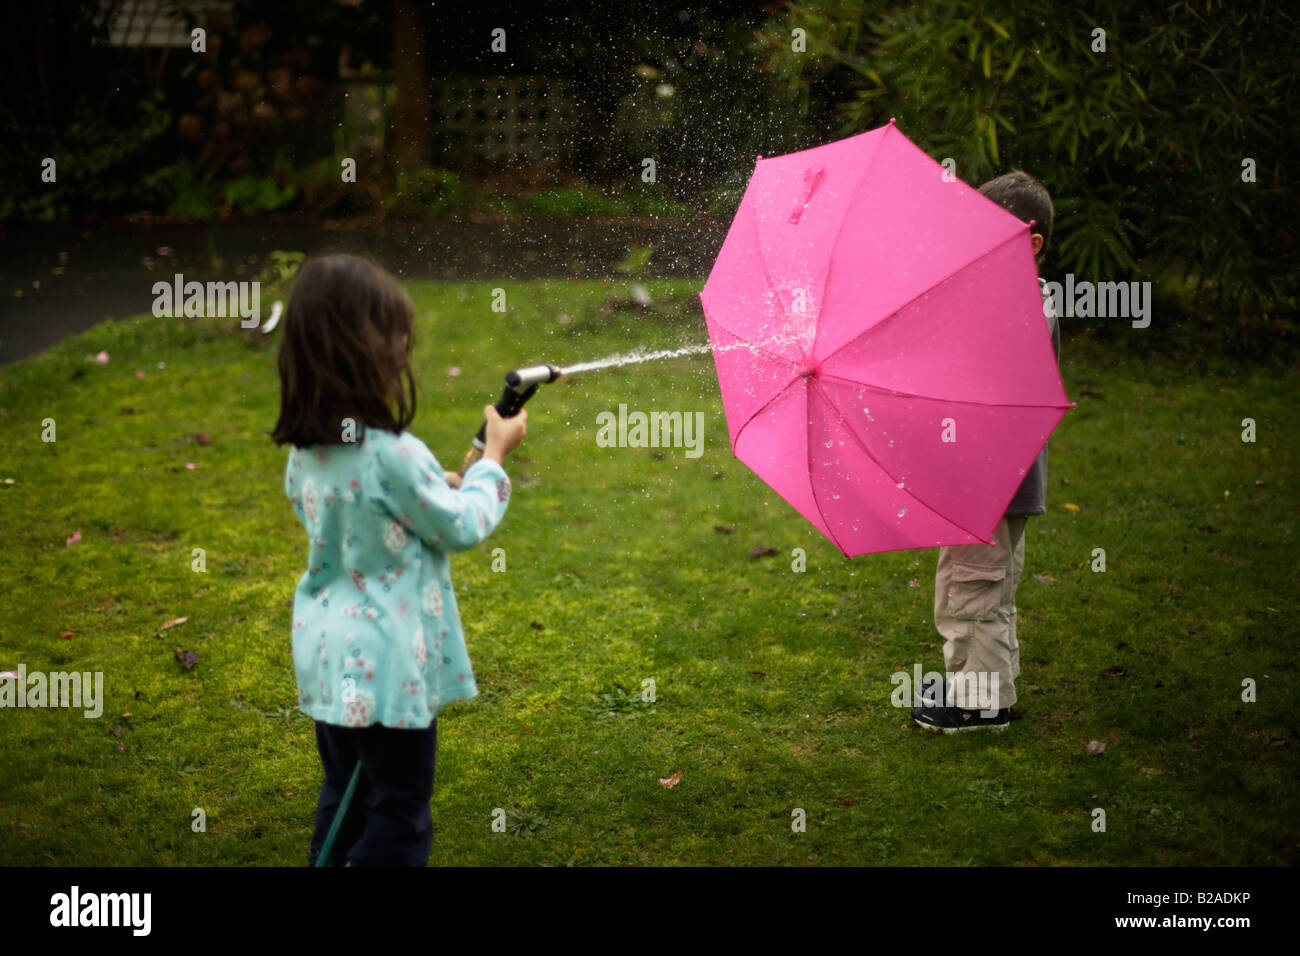 Garçon âgé de 6 ans se cache derrière un parapluie rose Banque D'Images